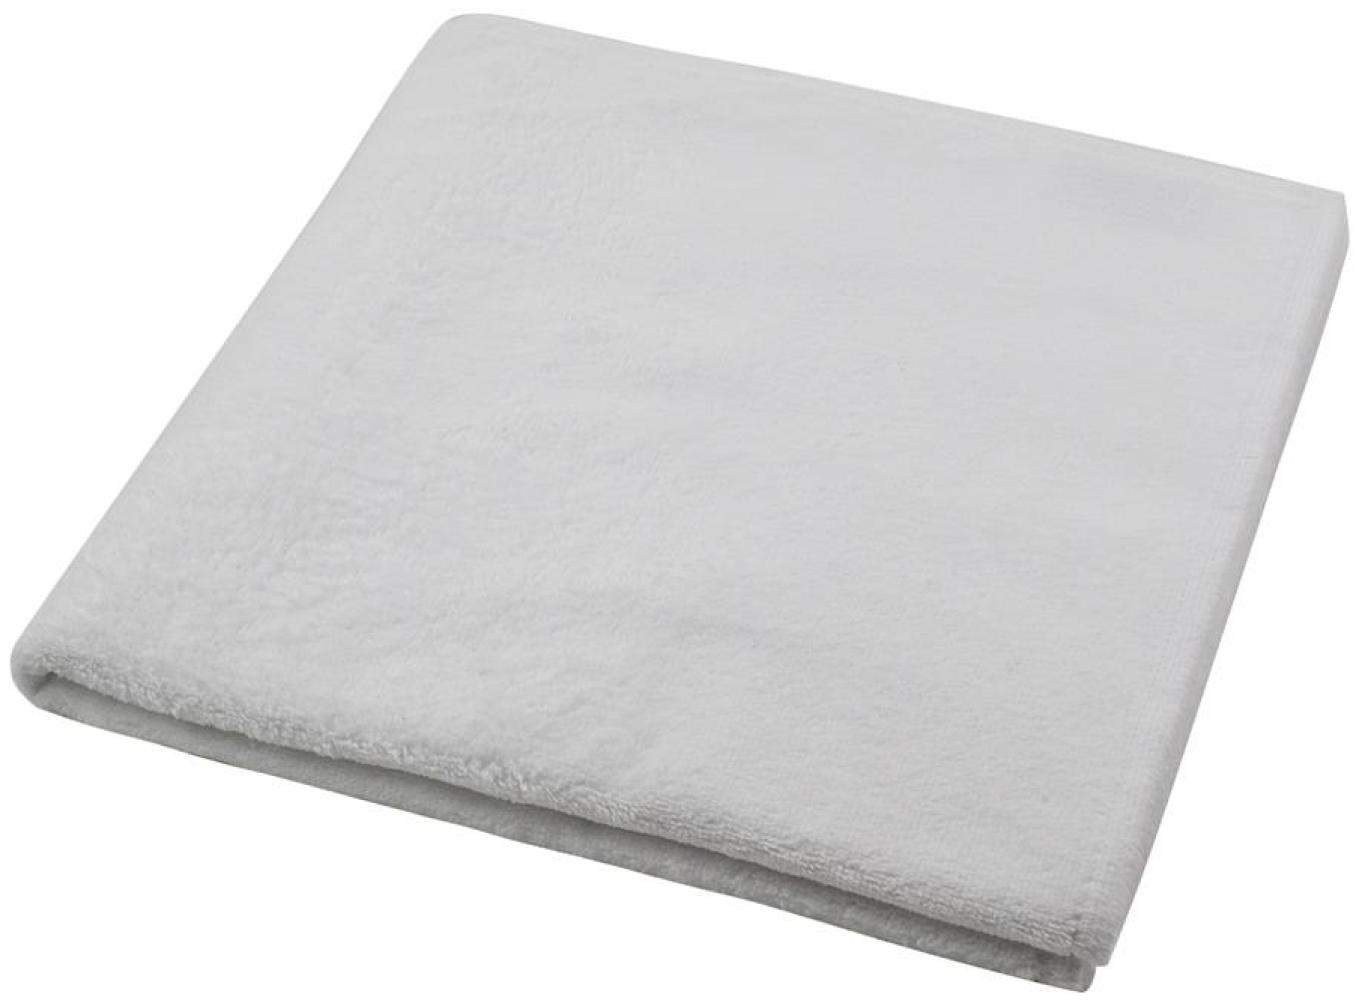 Duschtuch 70x140 cm weiß Baumwolle Polyester Hotel Qualität Bild 1